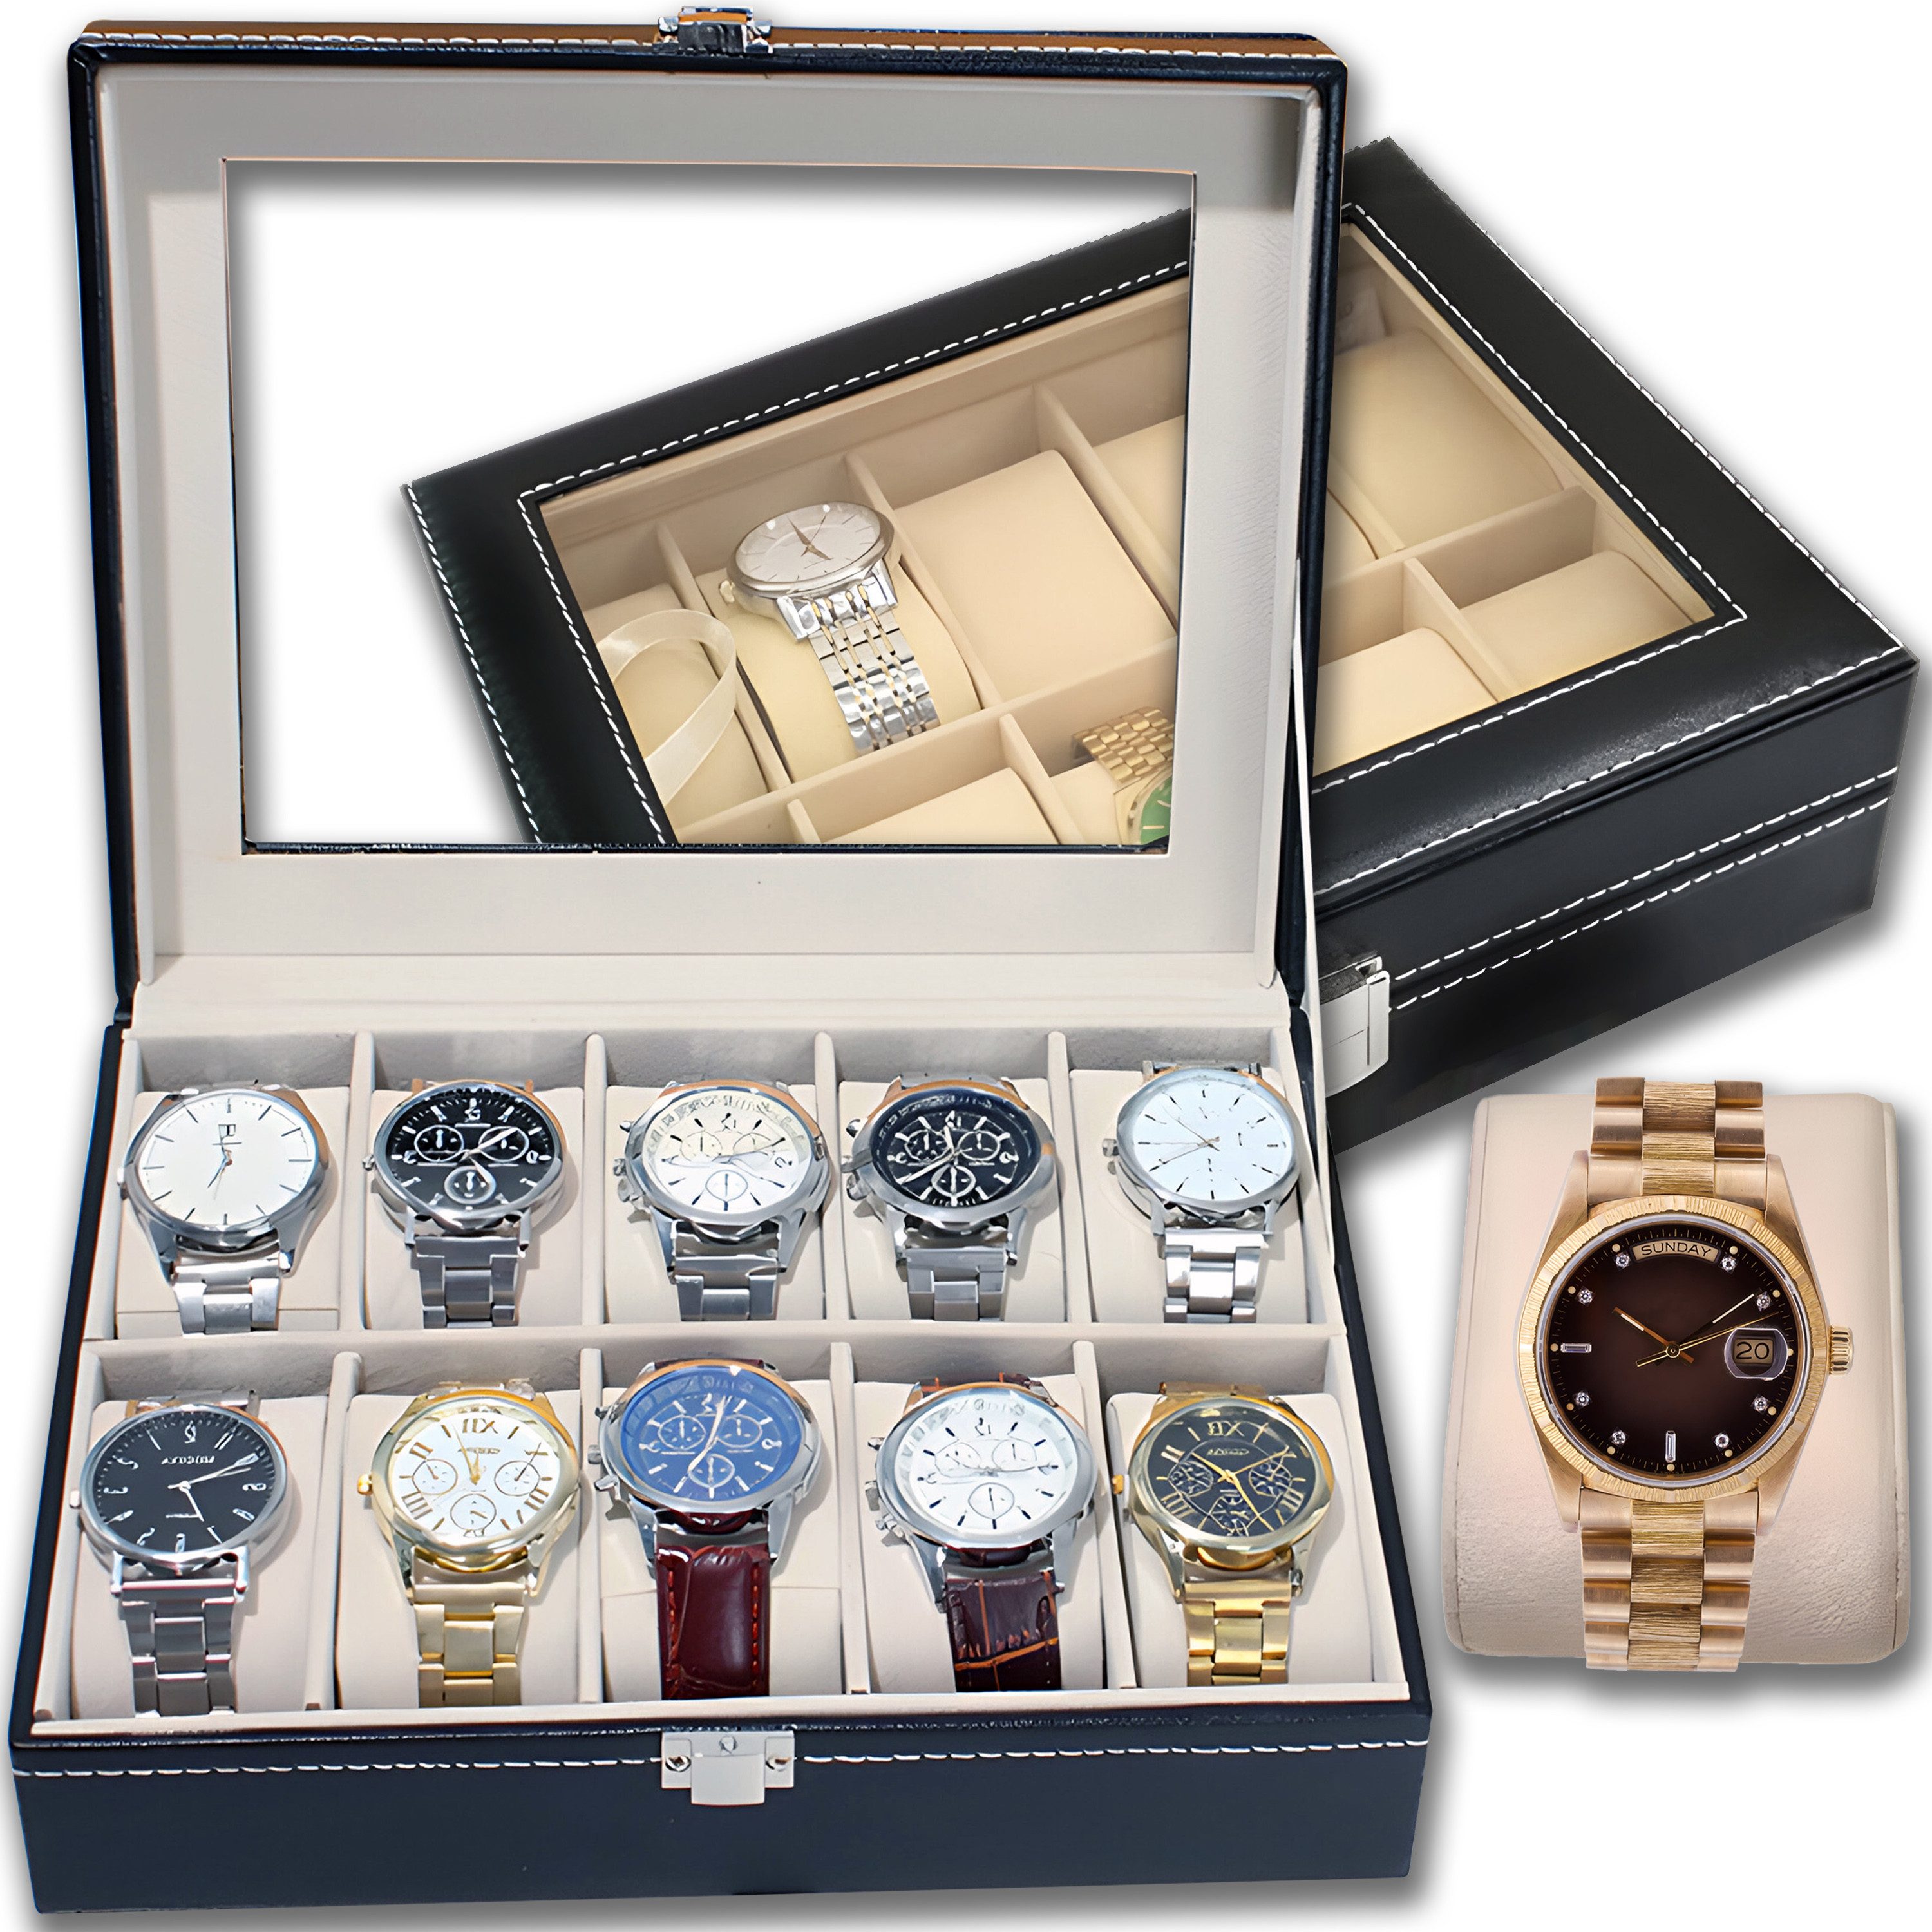 Retoo Uhrenbox Uhrenbox Schaukasten Uhrenkoffer Uhrenkasten Uhrenschatulle 10 Uhren (Set, Uhrenbox), Uhrenschutz, Hohe Verarbeitungsqualität, Kompakte Abmessungen